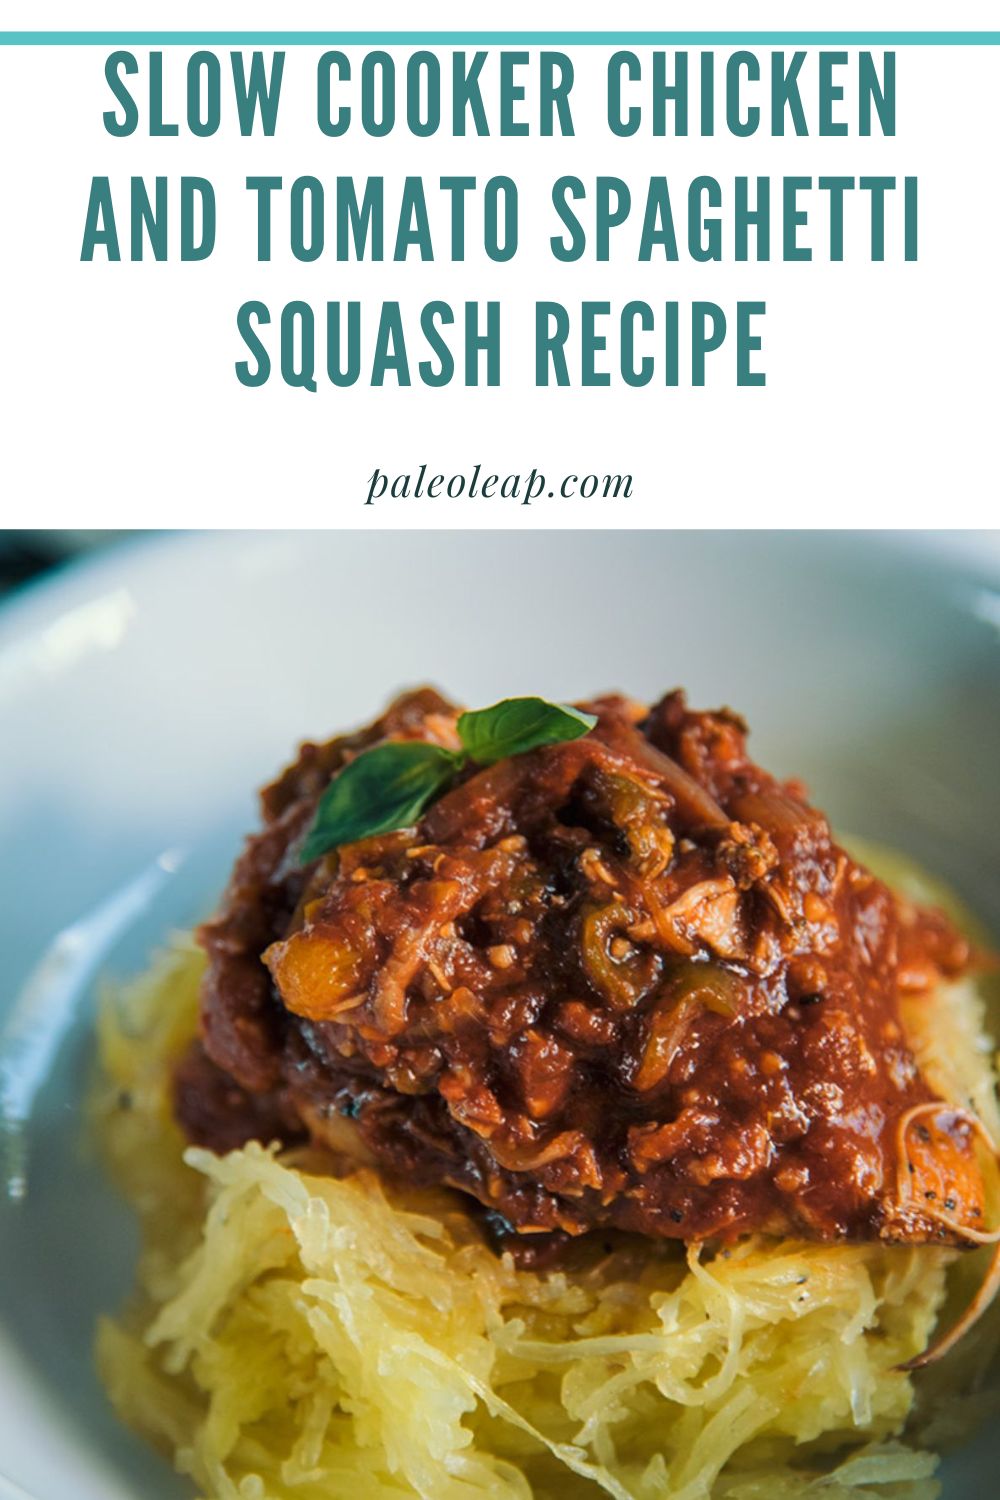 Slow Cooker Chicken and Tomato Spaghetti Squash Recipe | Paleo Leap